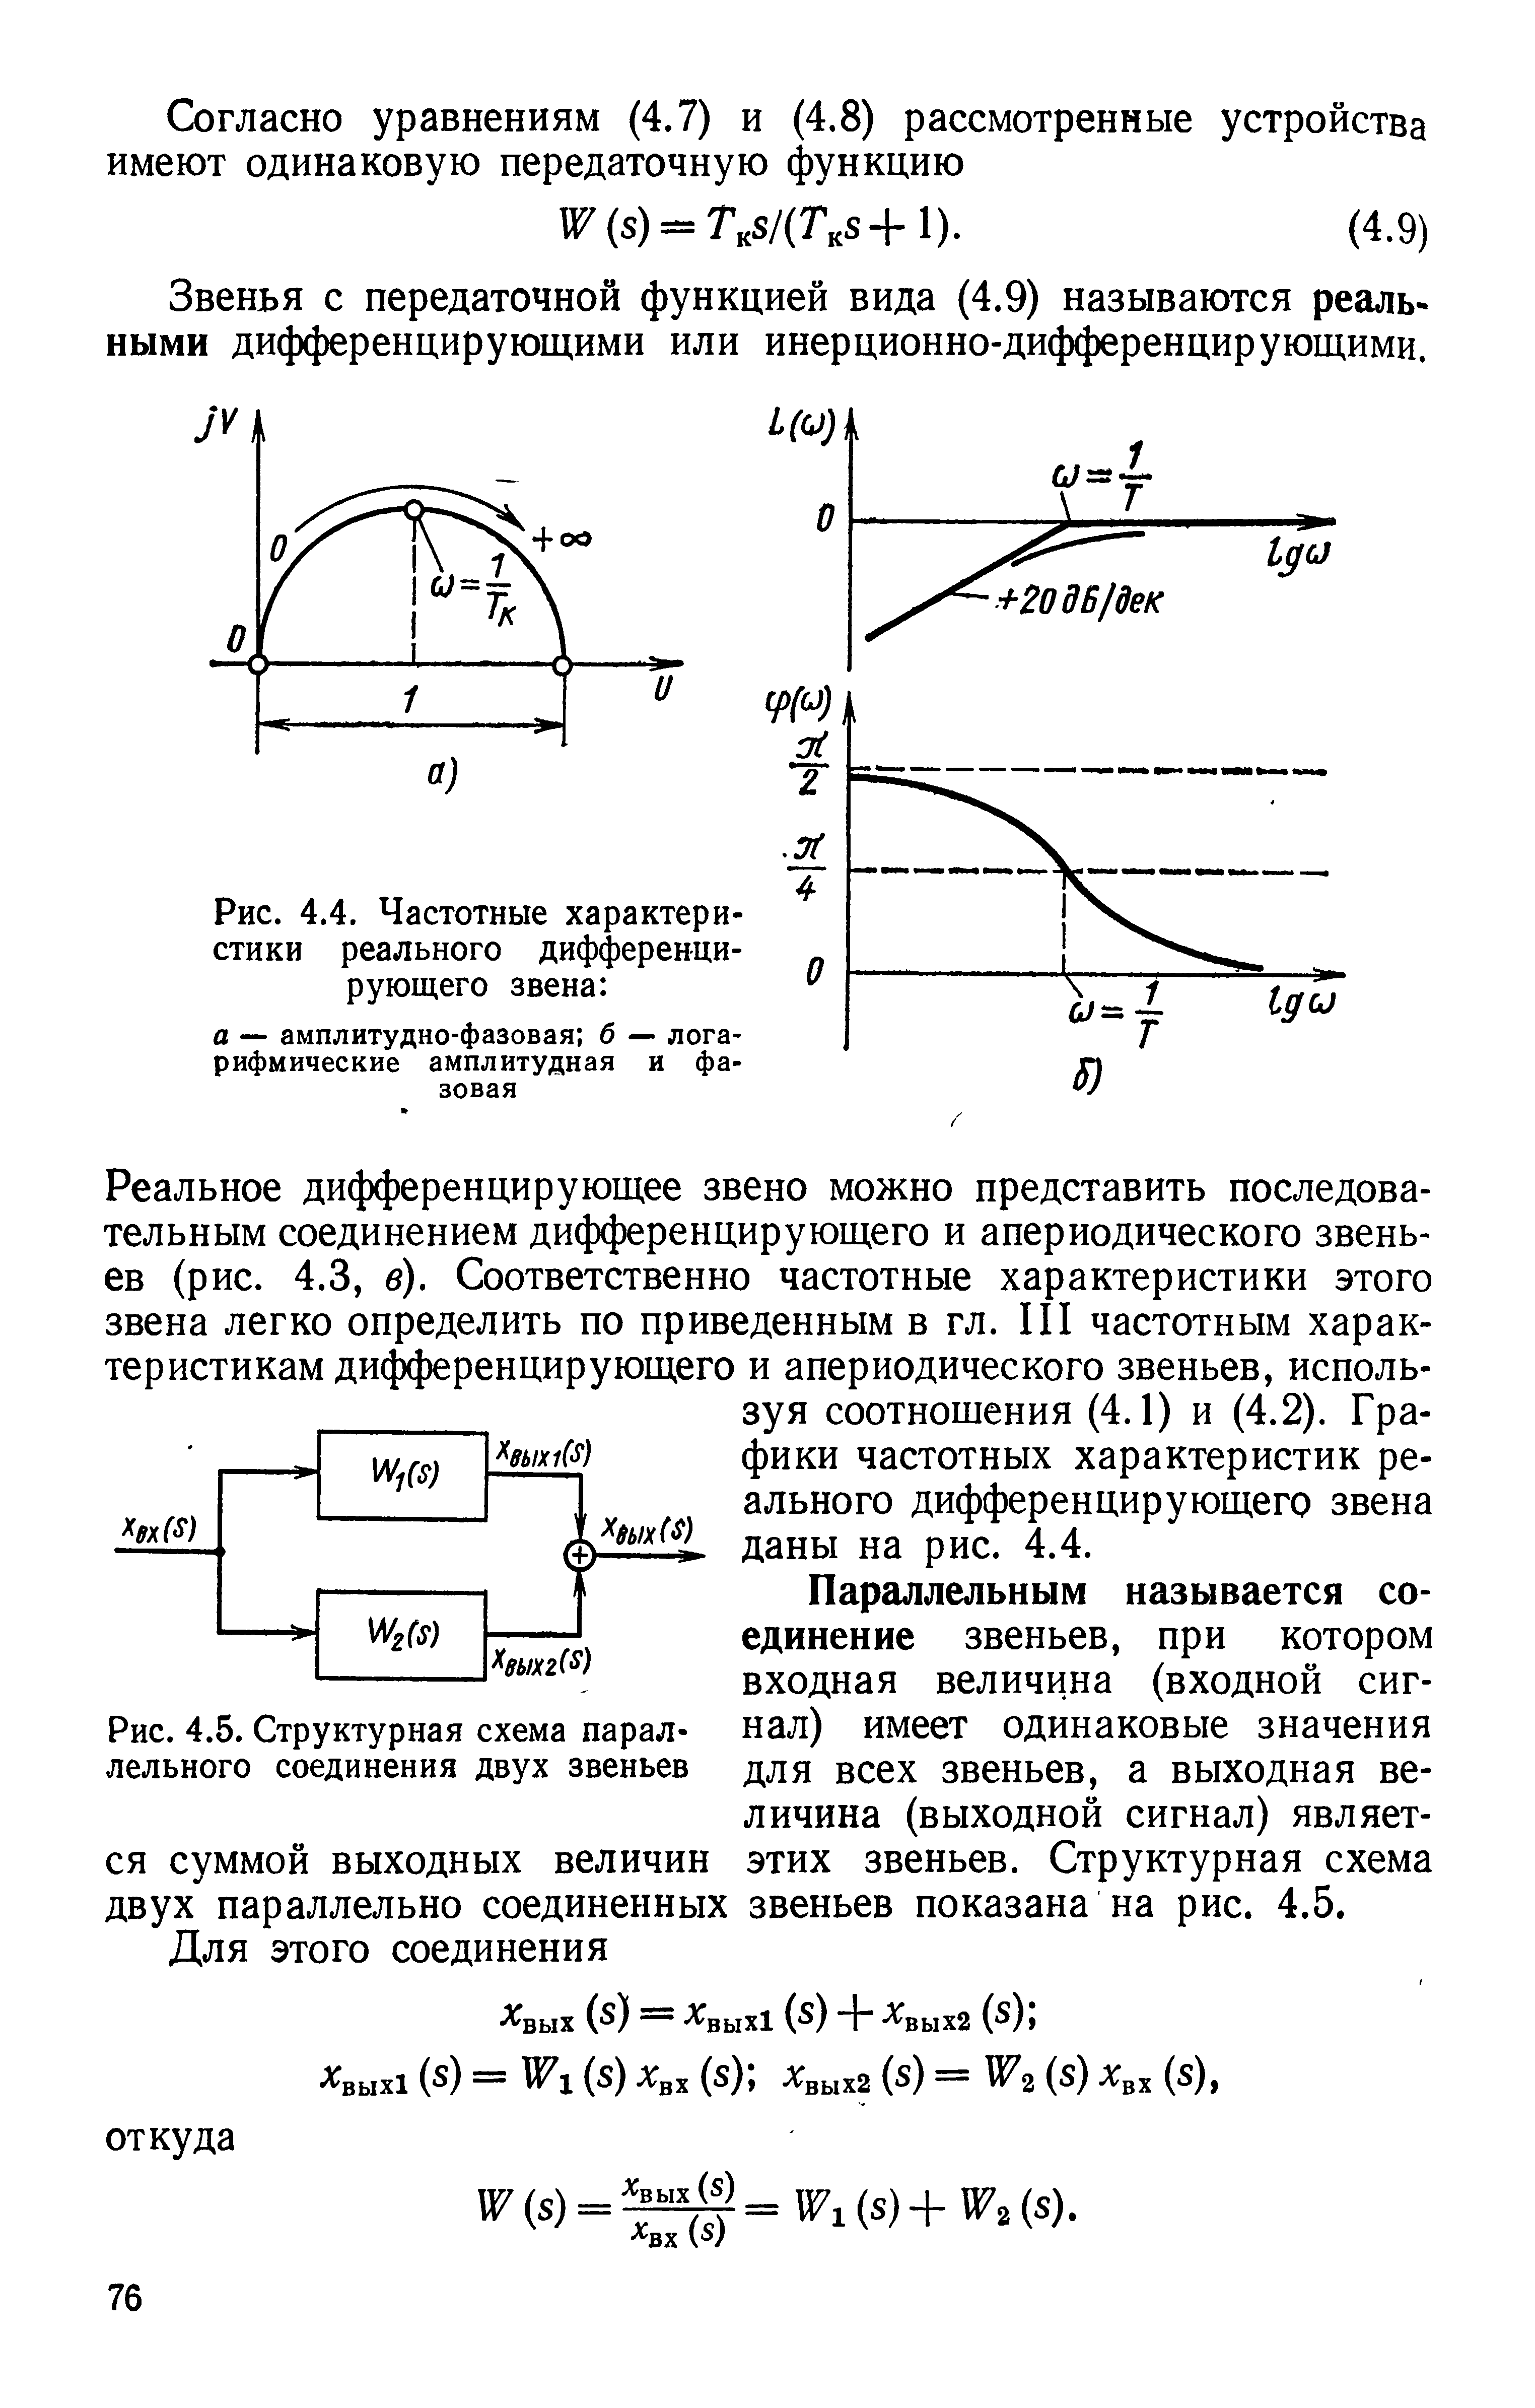 Рис. 4.5. Структурная схема параллельного соединения двух звеньев
